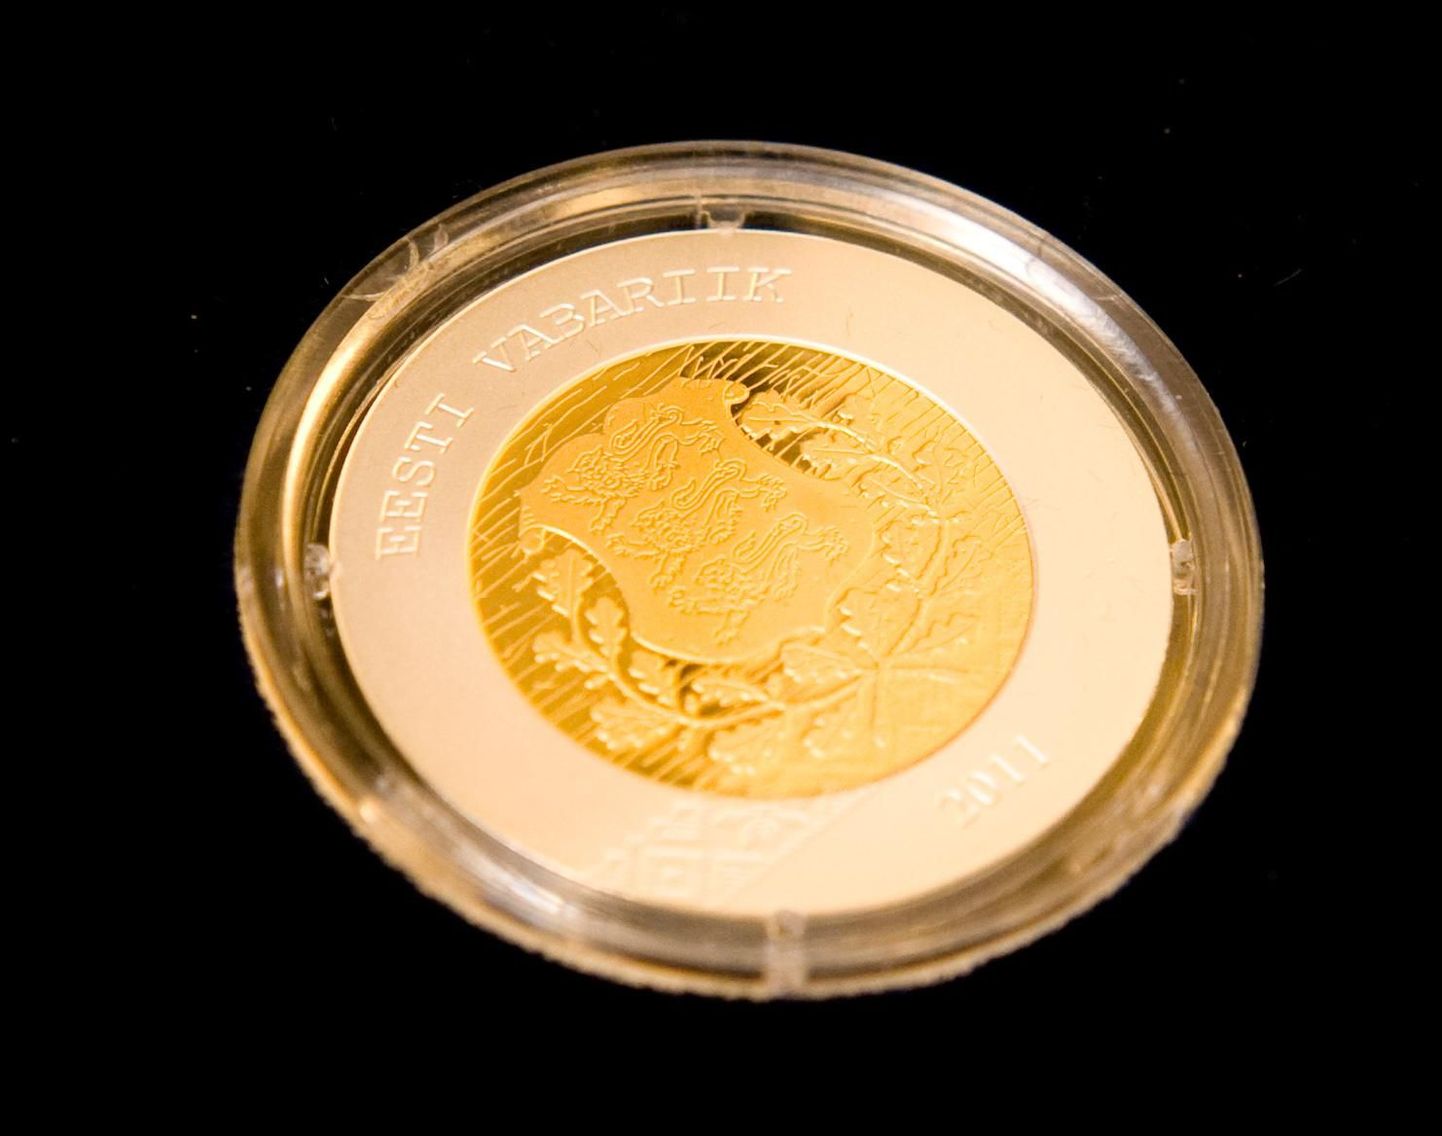 Eesti 20-eurone bimetallist meenemünt, mille autoriks on Priit Pärn.